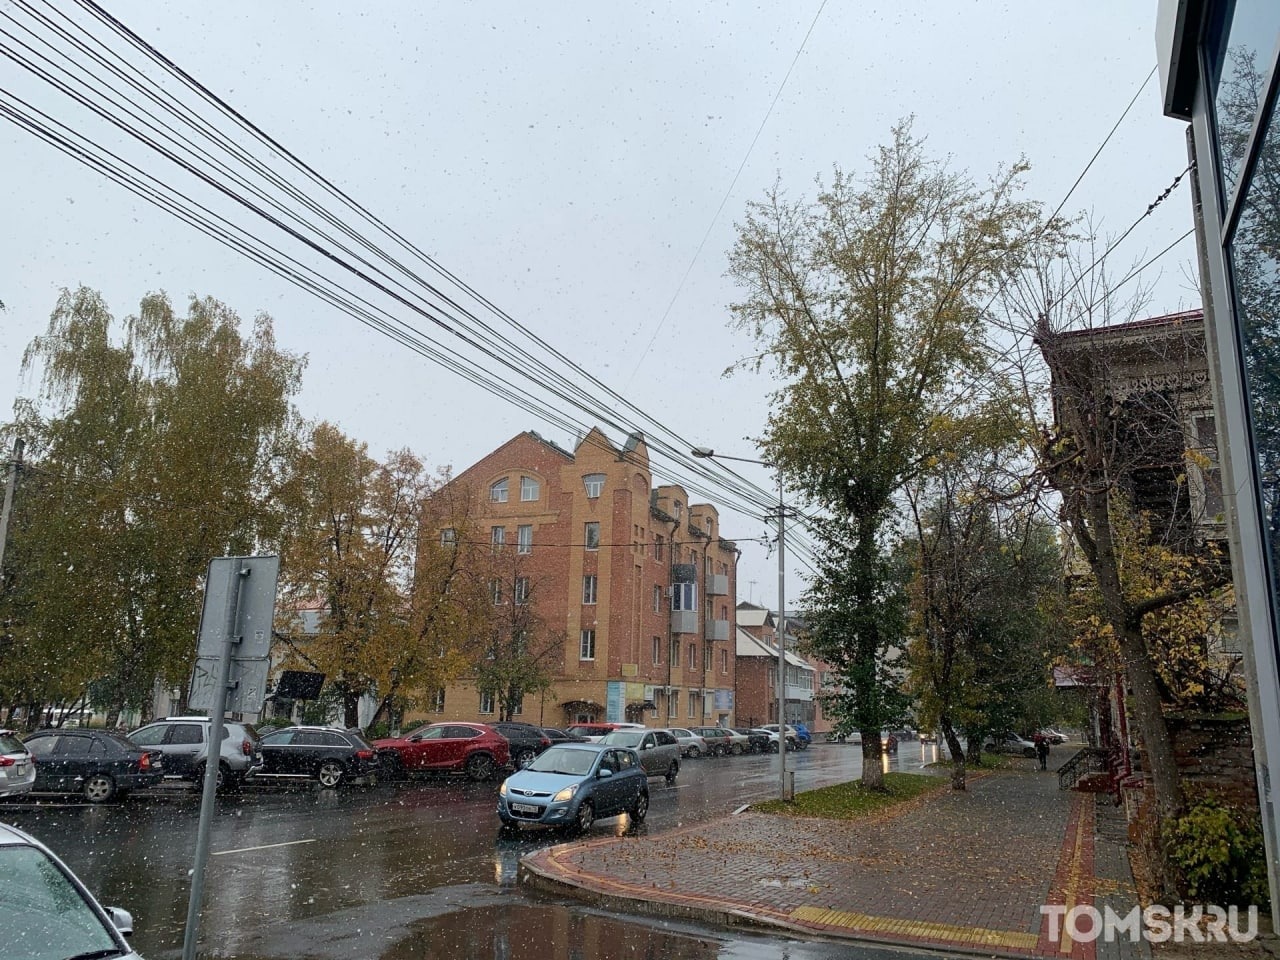 Октябрь в Томске начнется со снегопада и северного ветра